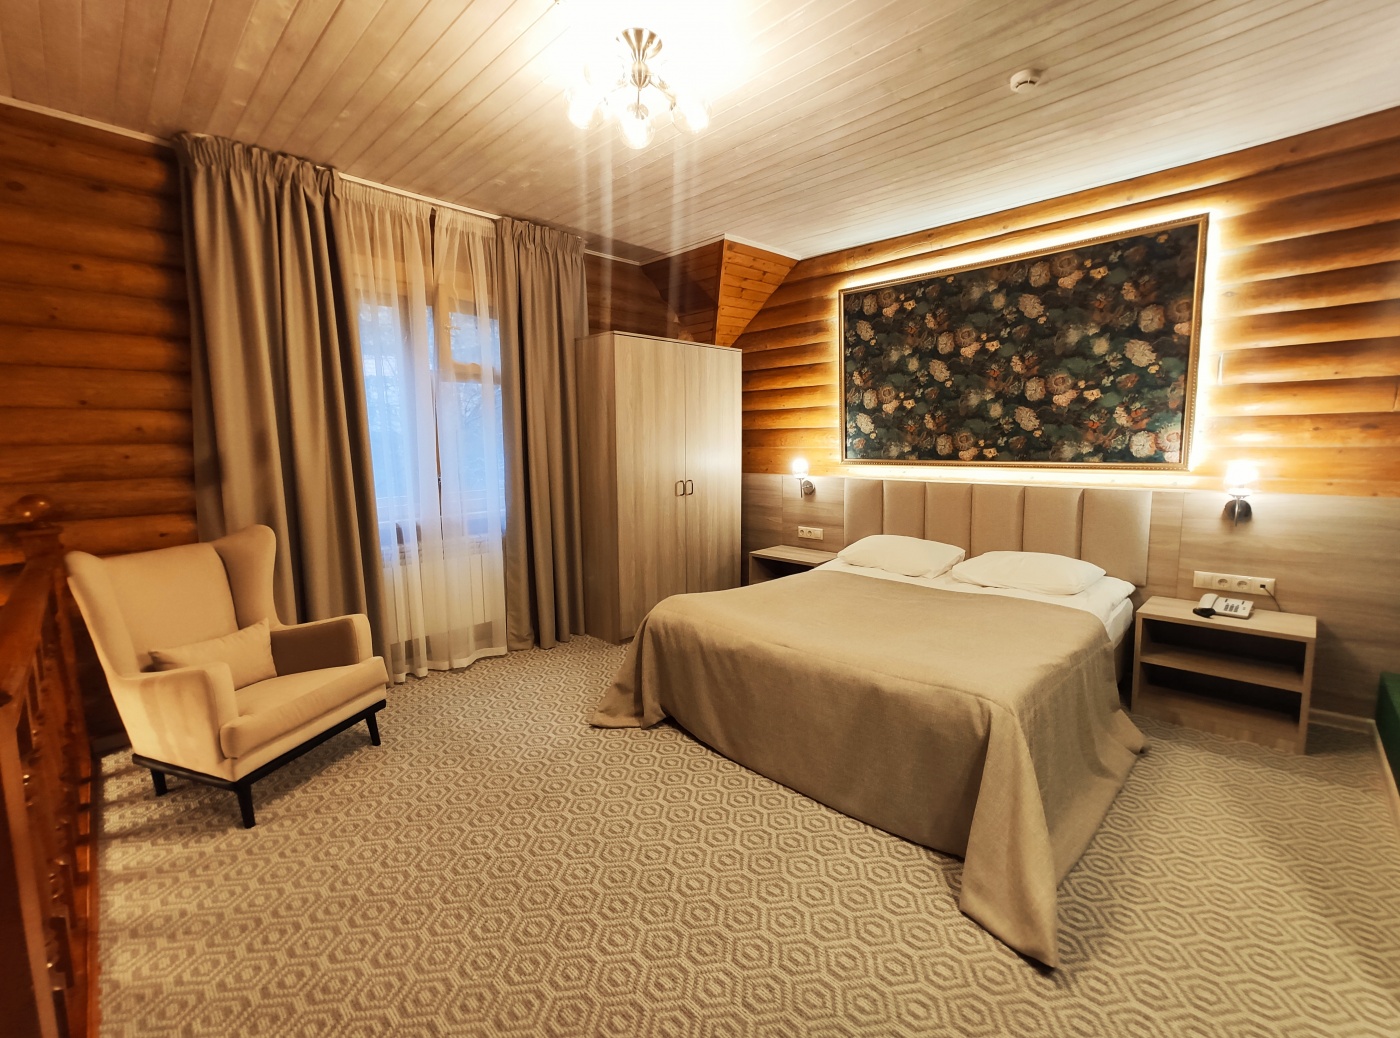  Дачный отель «Истра Holiday» Московская область Таунхаус с одной спальной комнатой